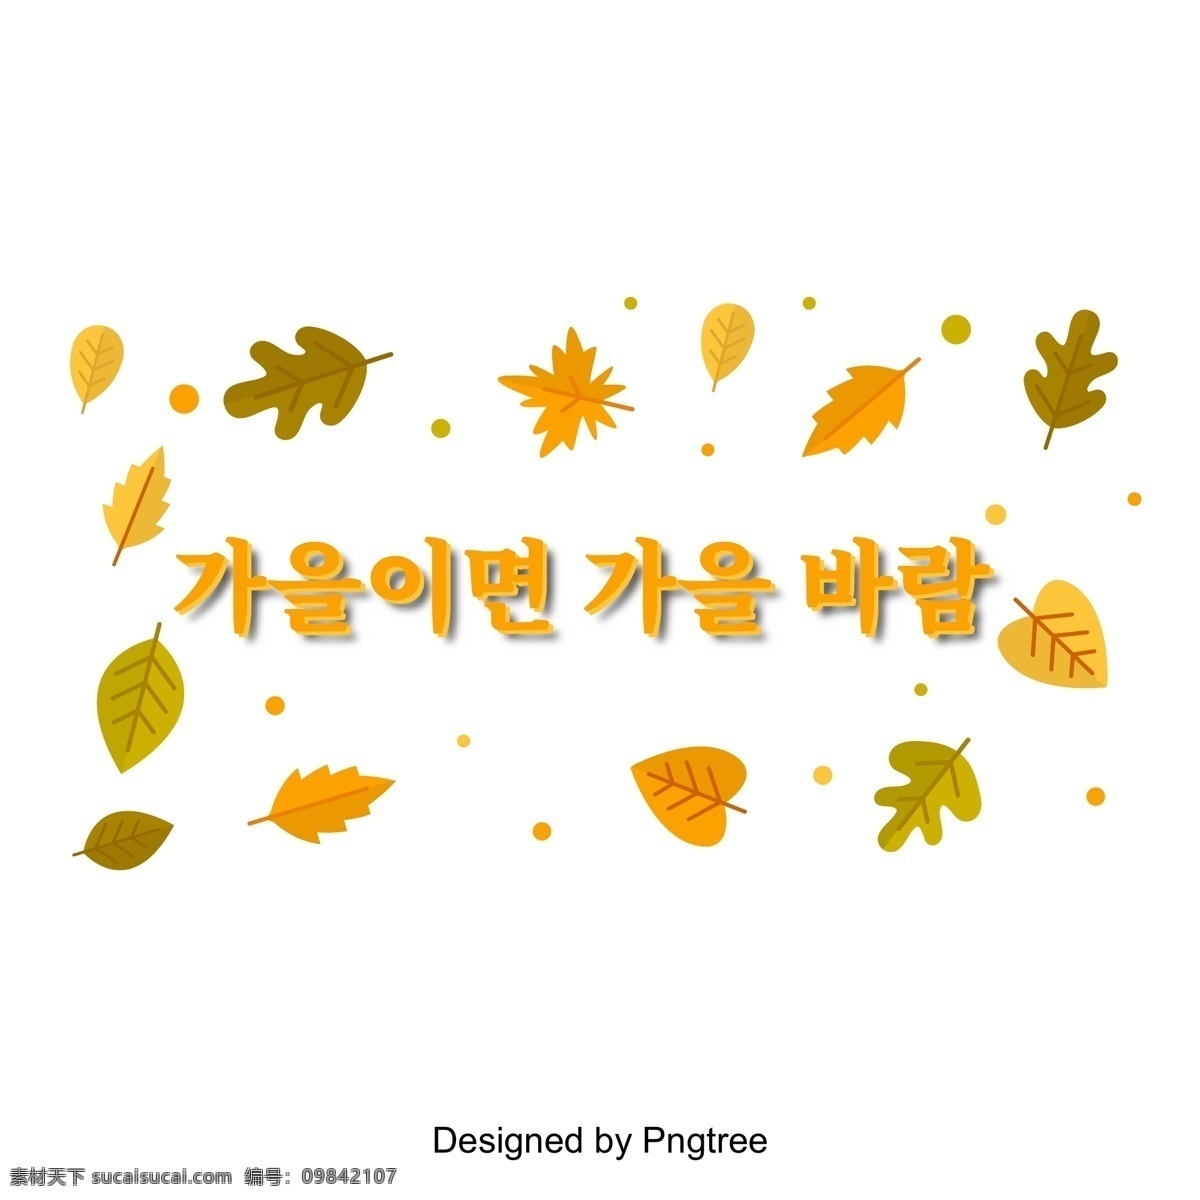 秋天 季节 颜色 转换 字体 秋风q 秋天树叶 季节性 字体设计 季节性的进化